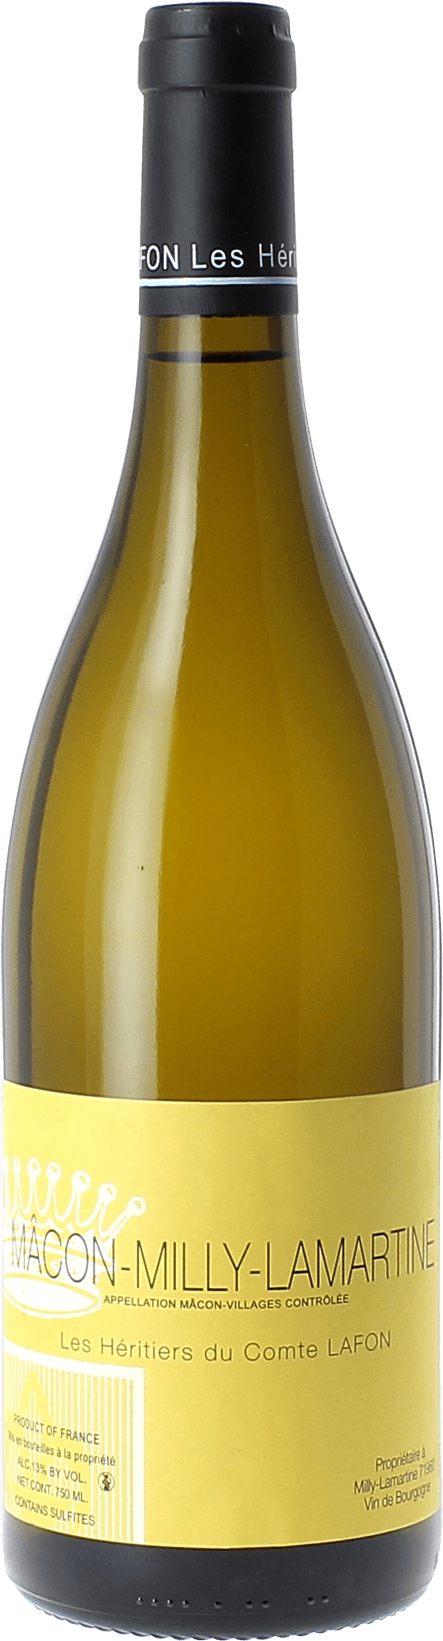 Macon milly lamartine 2018 Domaine Les Hritiers du Comte Lafon, Bourgogne blanc